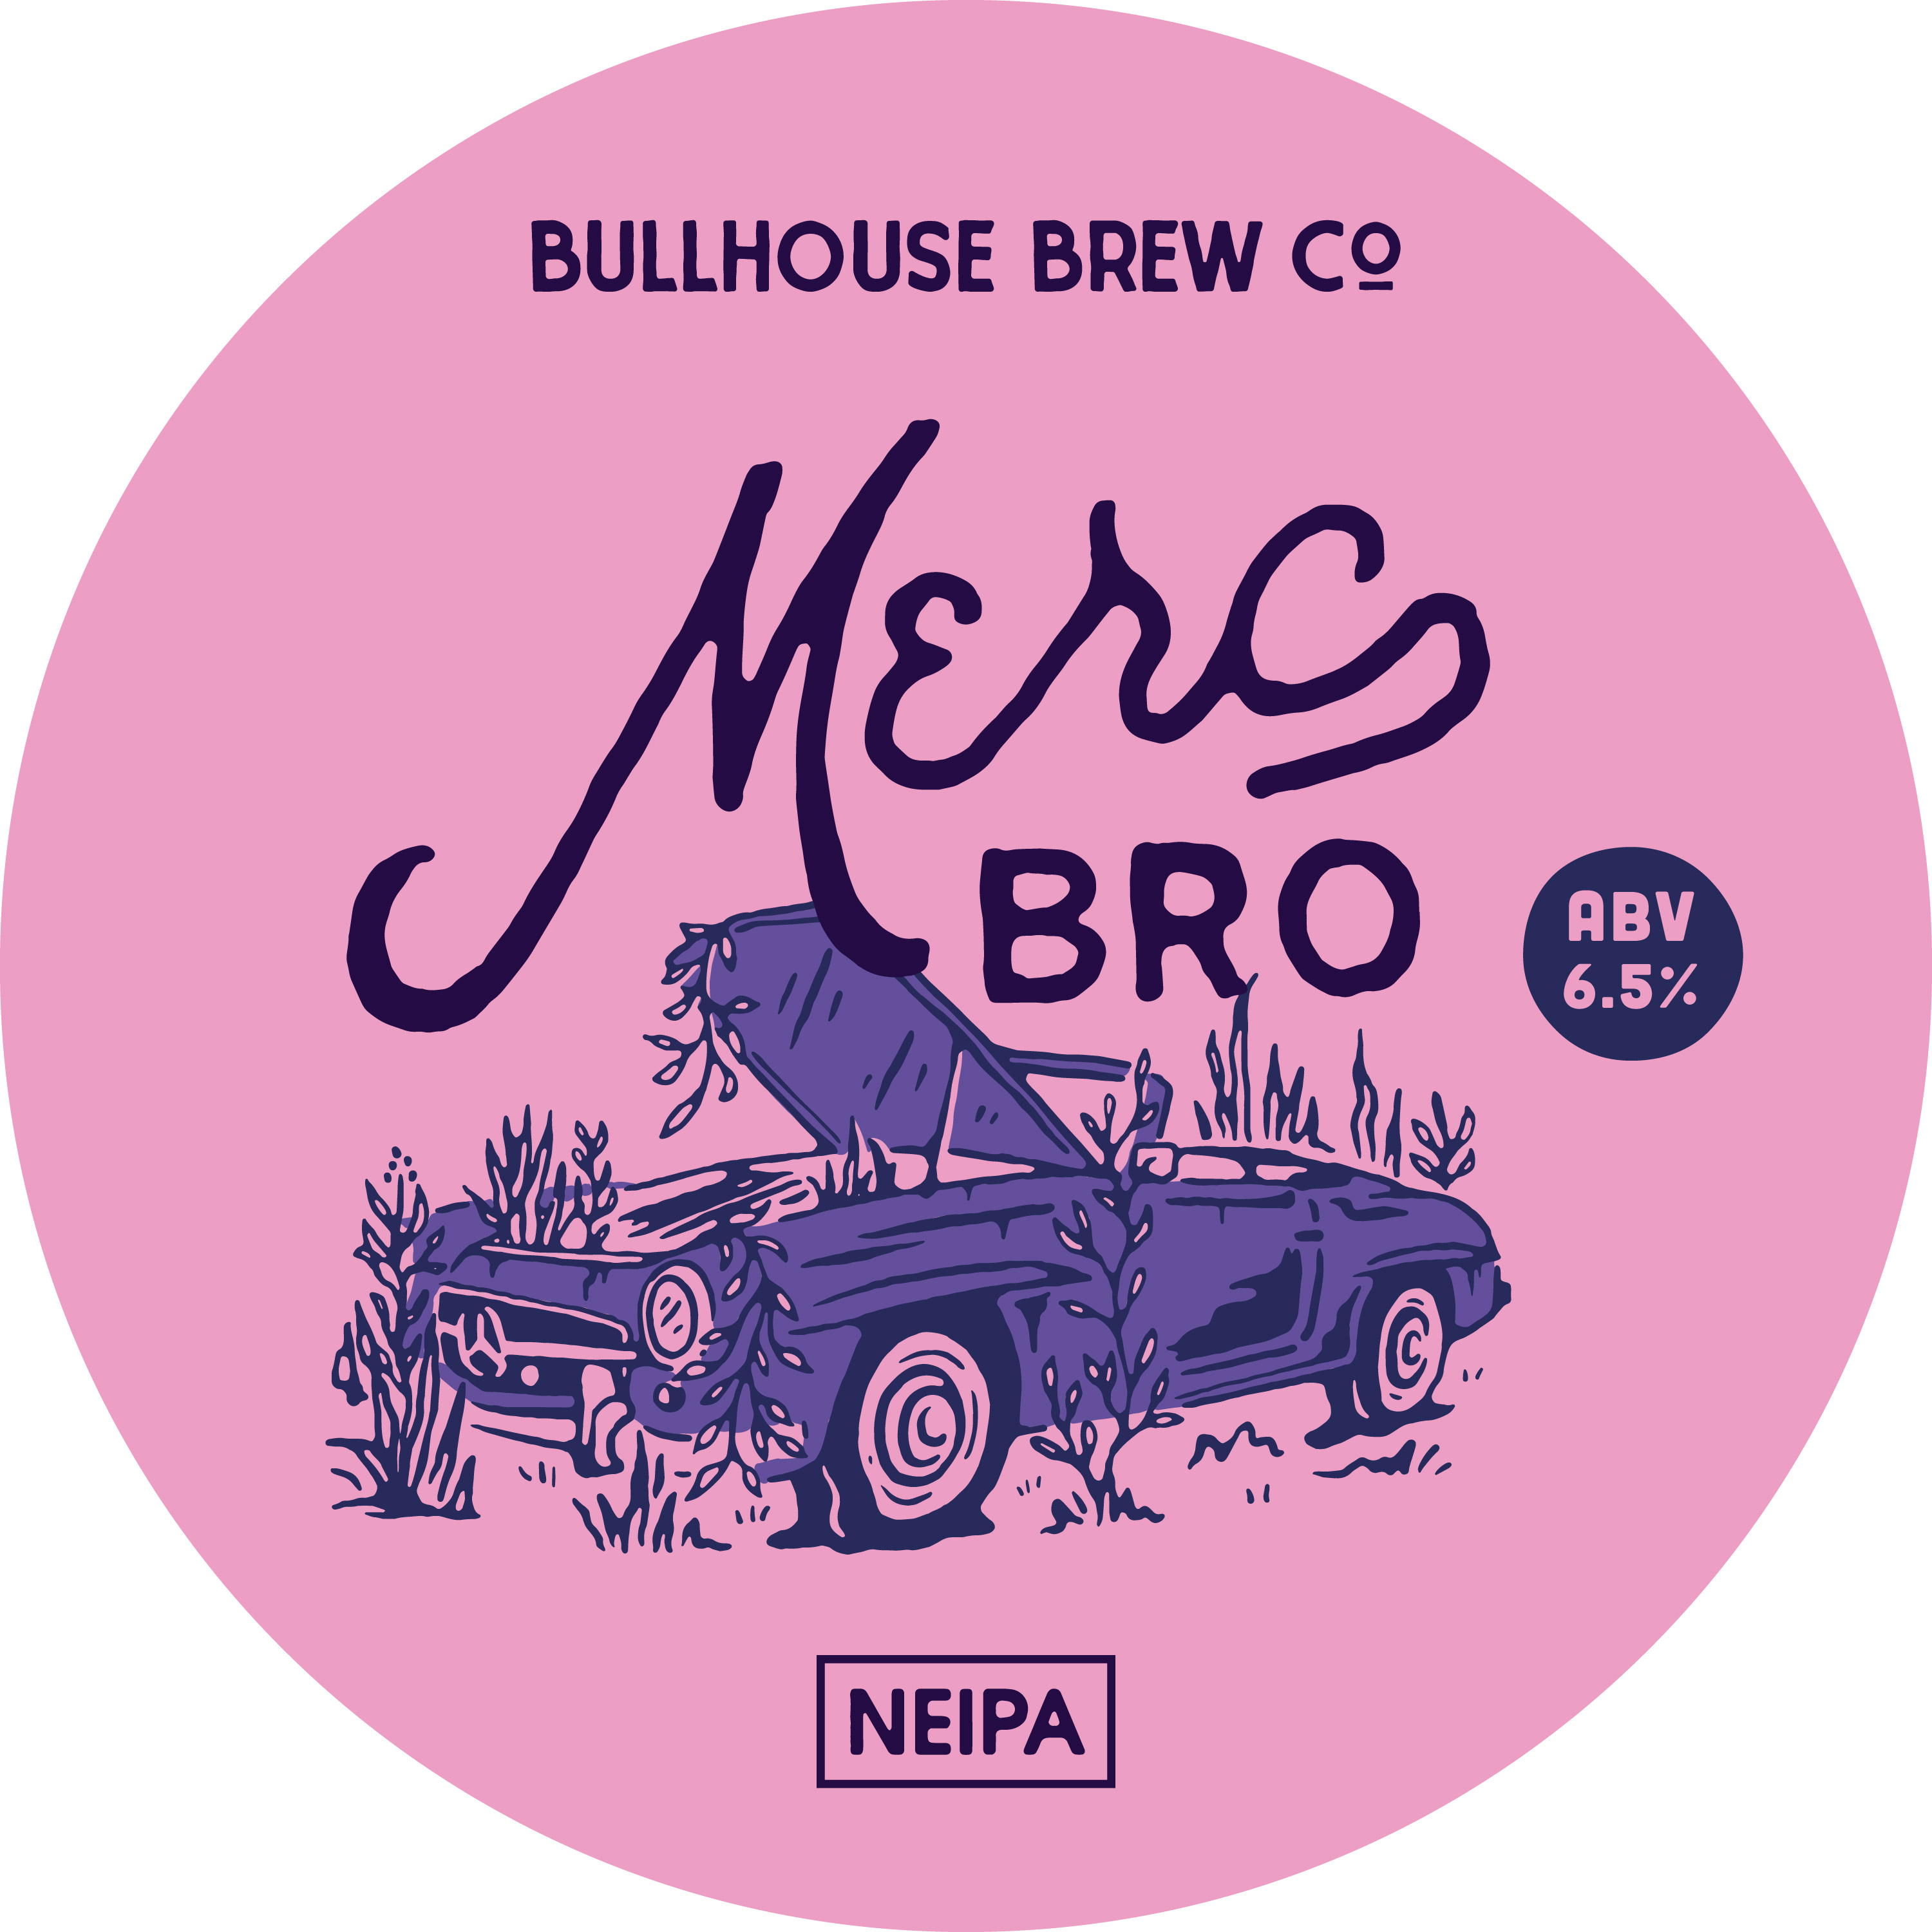 Bullhouse Merc Bro NEIPA 30L Keg